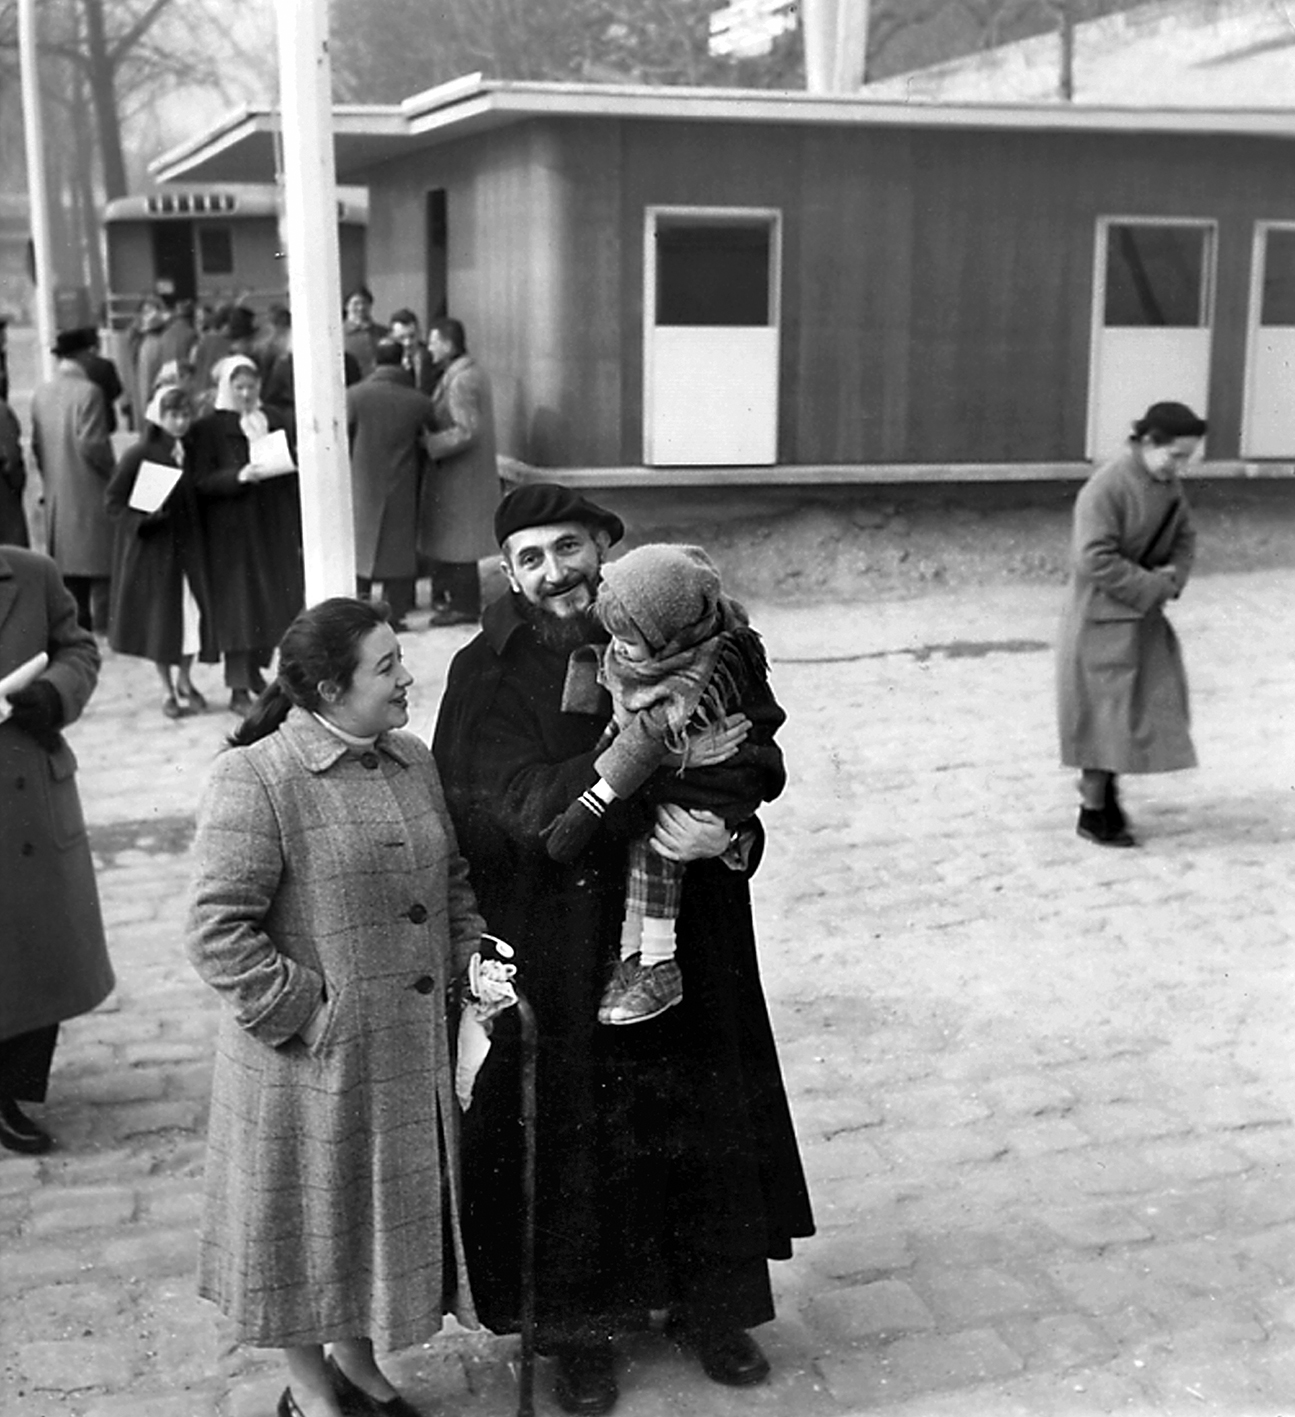 L’abbé Pierre devant la maison démontable Les Jours Meilleurs en compagnie de la famille à laquelle elle est destinée, quai Alexandre-III, Paris, février 1956.